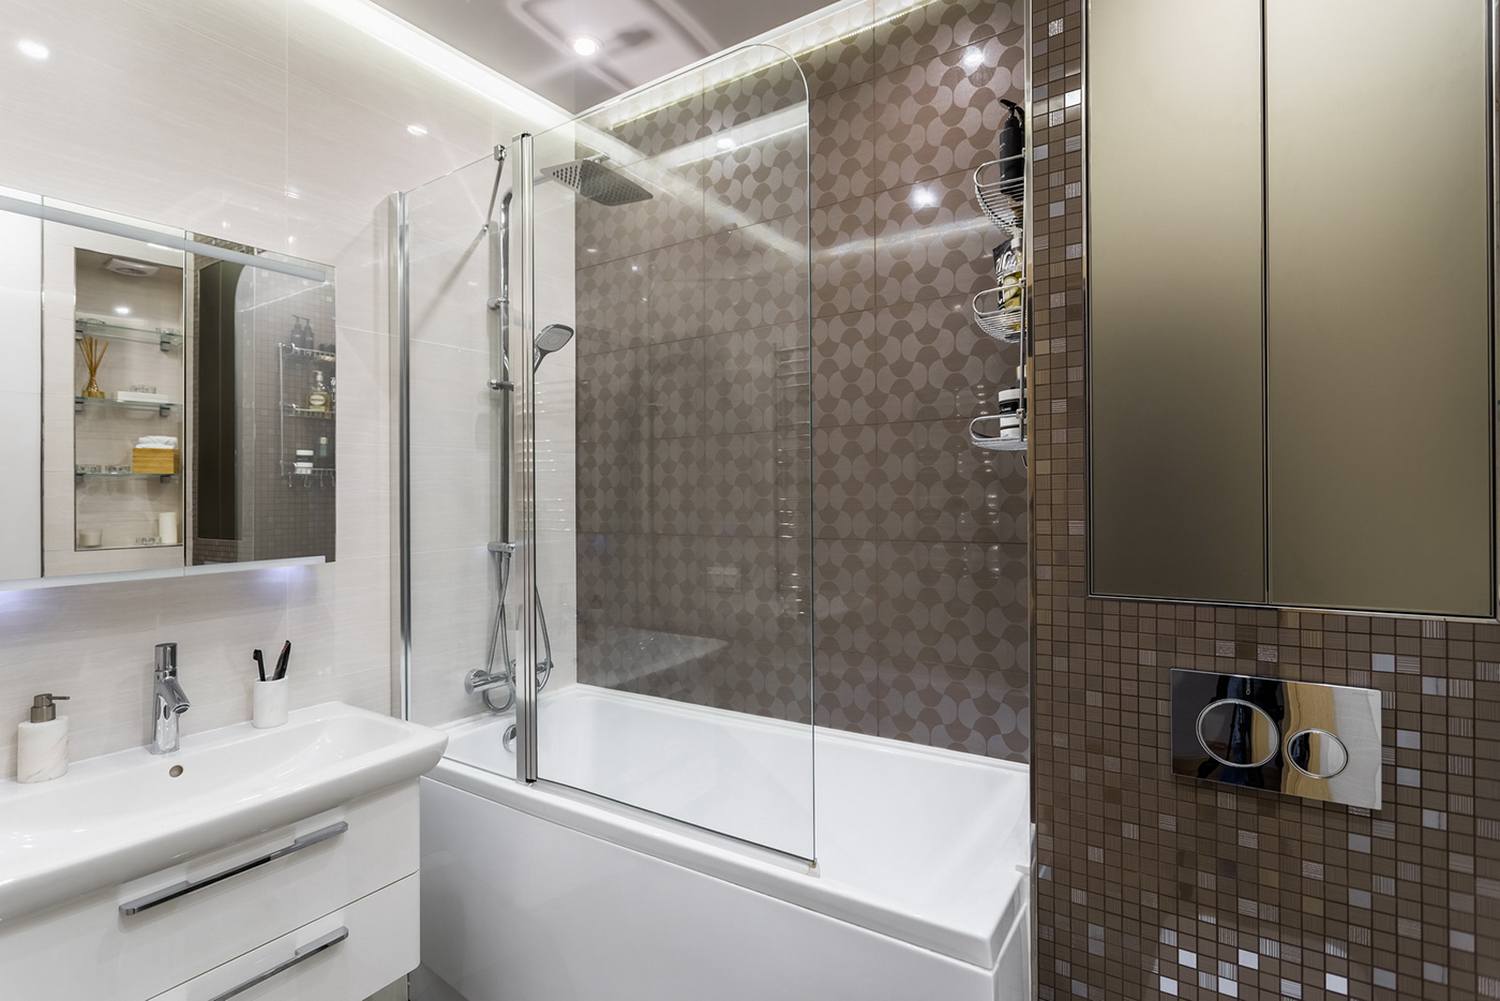 Bước vào khu vực phòng tắm, chúng ta sẽ nhận thấy sự thay đổi màu sắc tương phản giữa trắng và nâu đậm với gạch ốp tường ở khu vực bồn tắm nằm khá bắt mắt, phân vùng với toilet bằng cửa kính trong suốt.